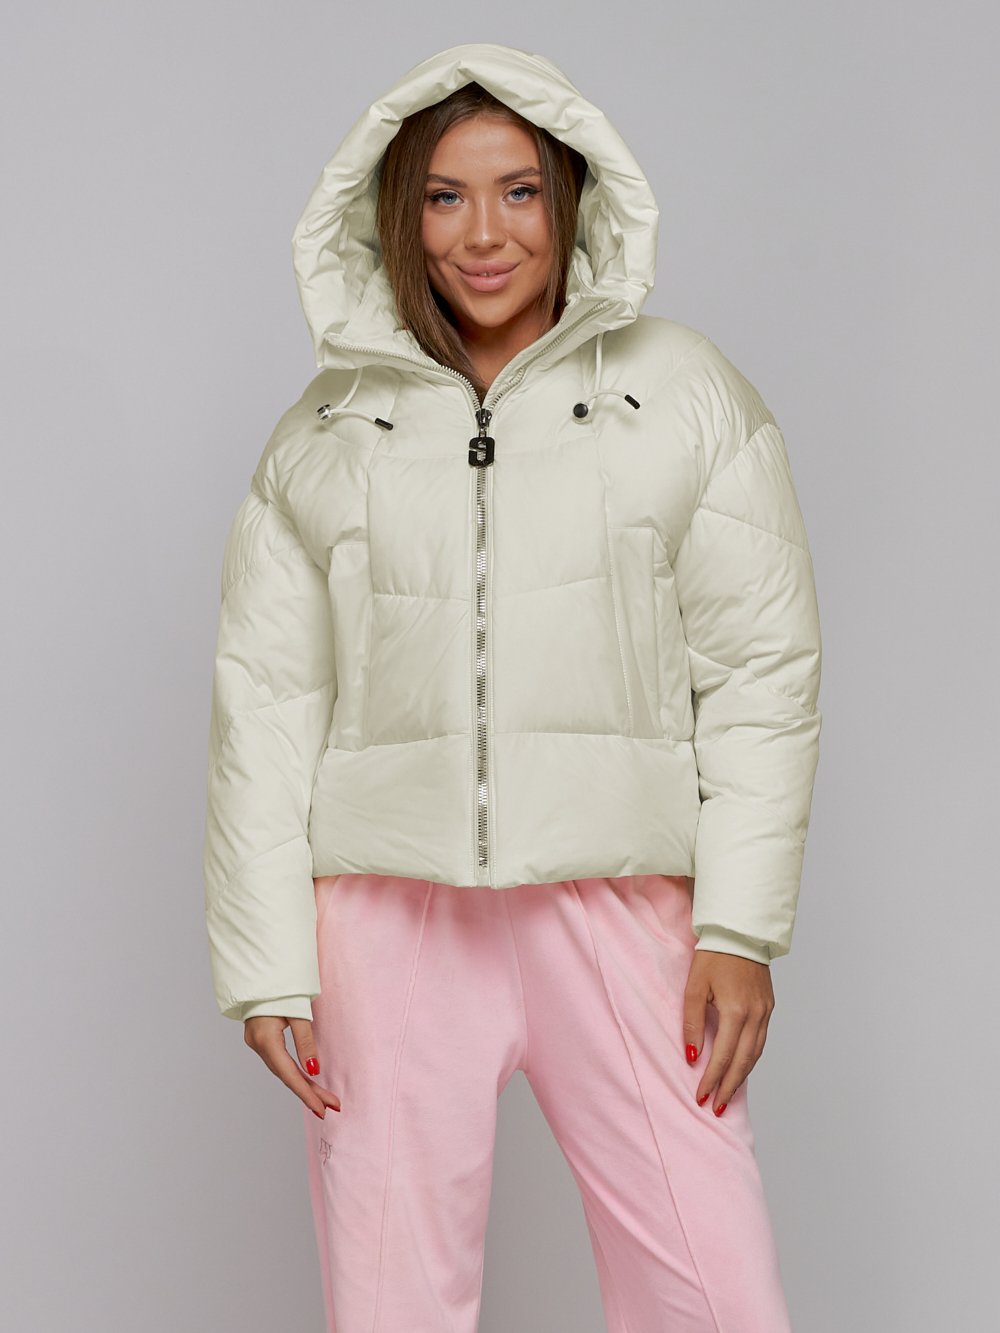 Купить оптом Зимняя женская куртка модная с капюшоном бежевого цвета 512305B в Екатеринбурге